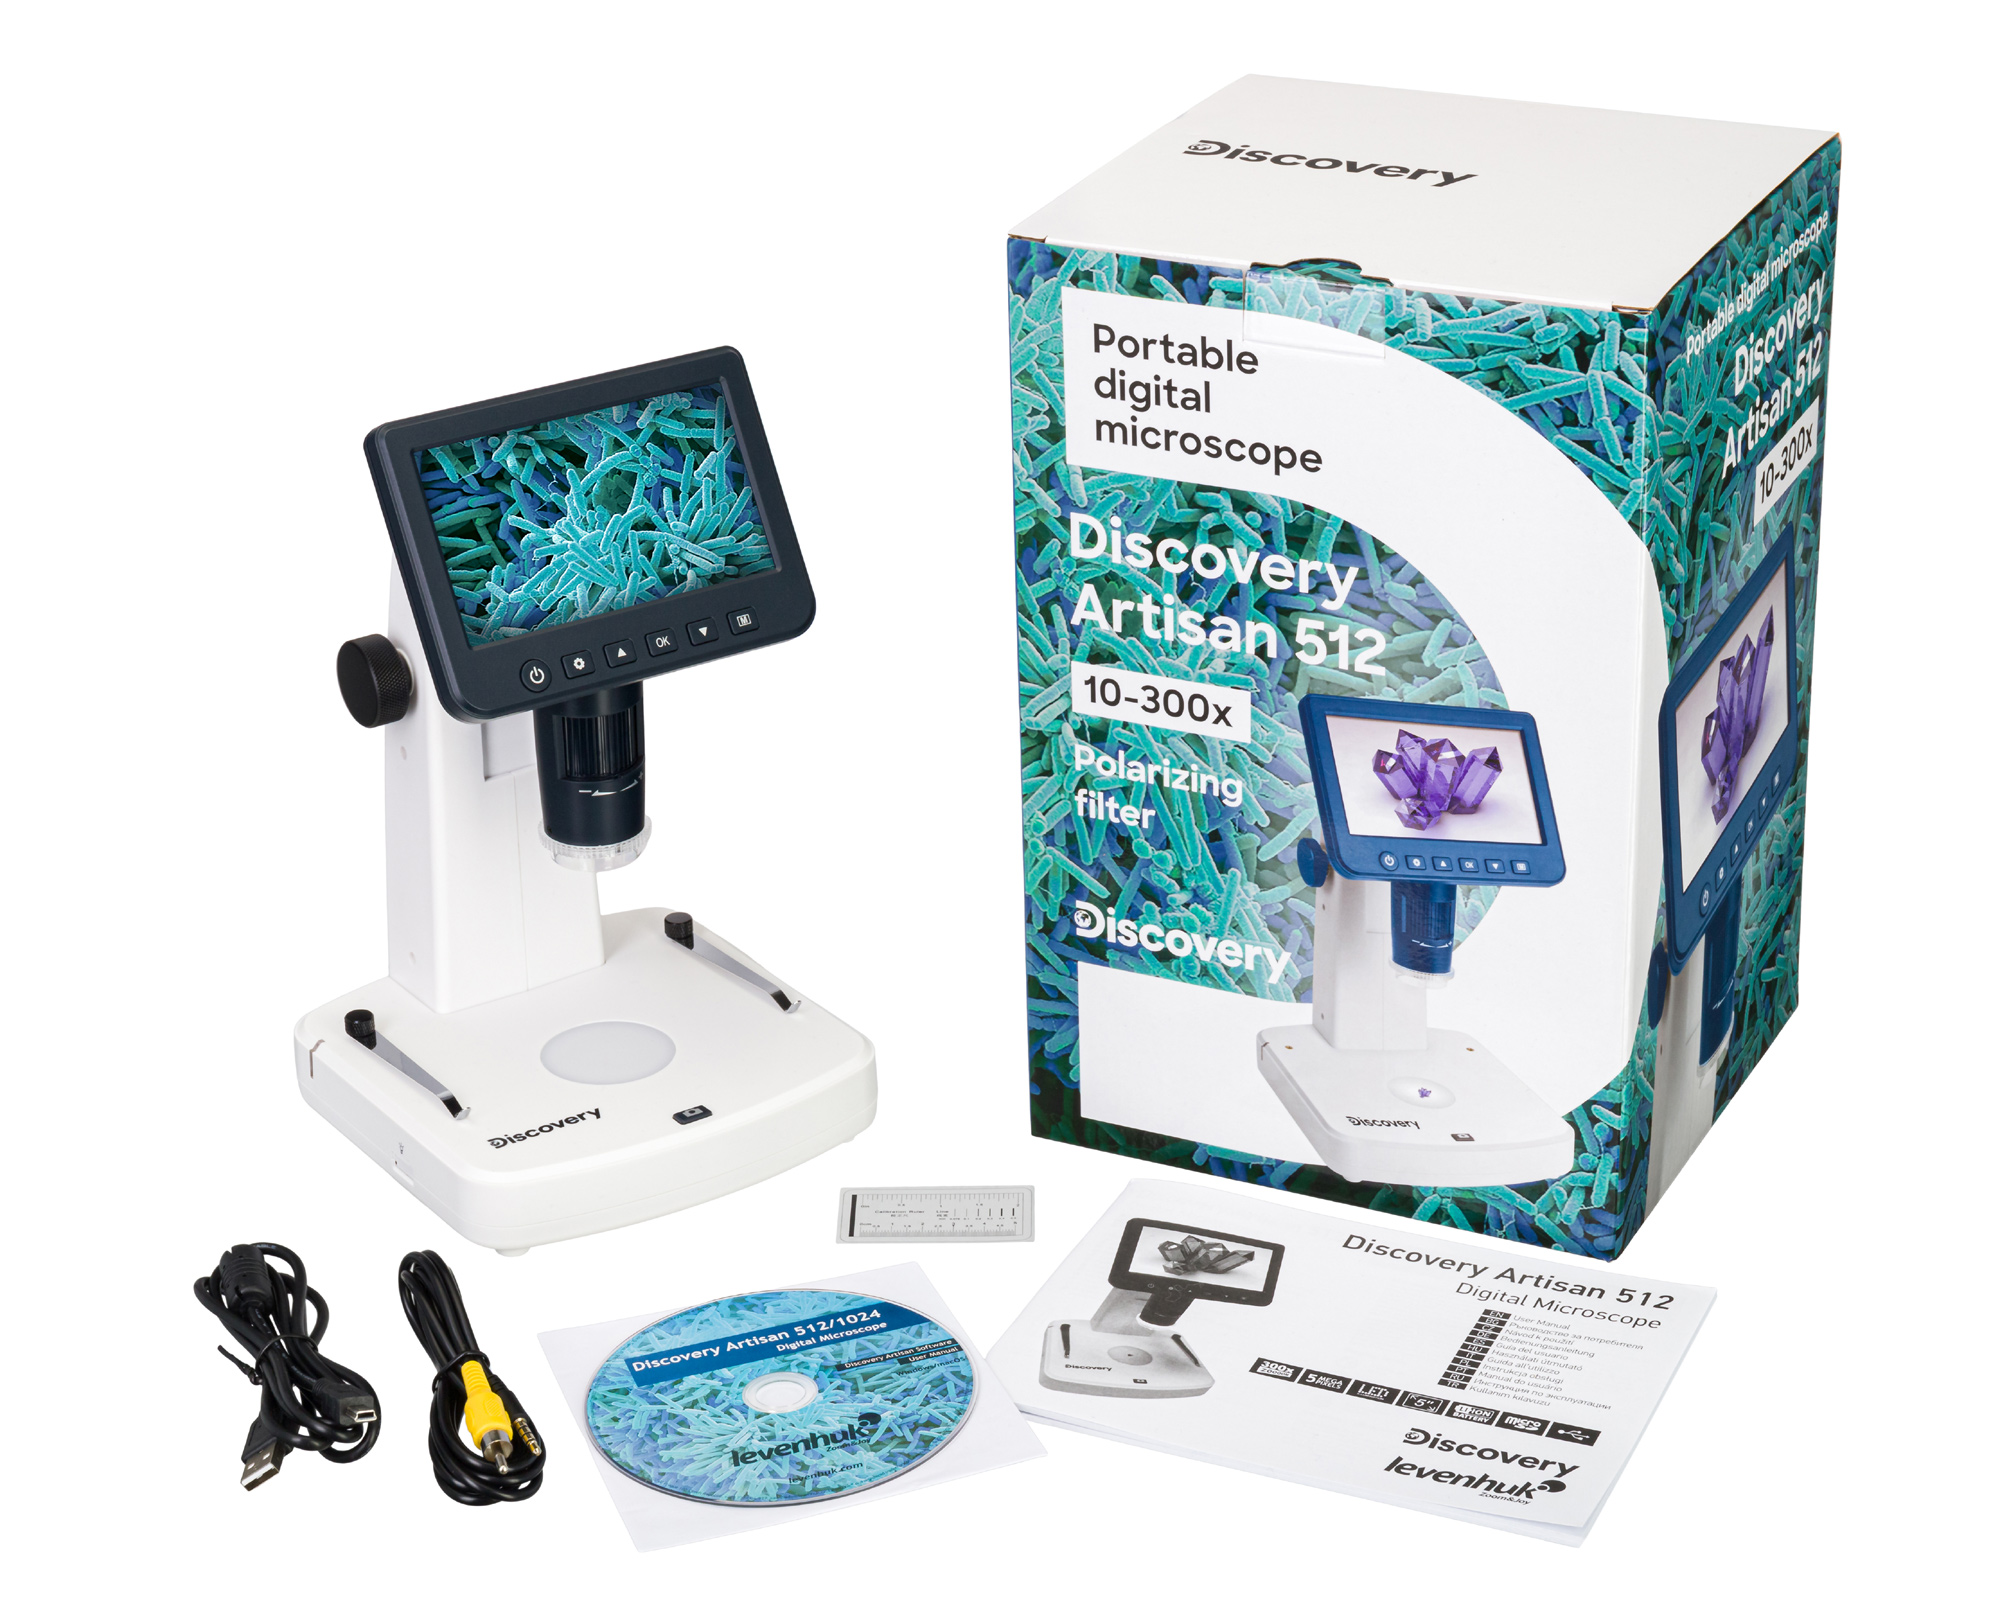 Súčasťou dodávky je digitálny mikroskop Discovery Artisan 512, AC adaptér, USB a AV kábel, kalibračná stupnica, podporné CD so softvérom, záručný list a užívateľský návod.